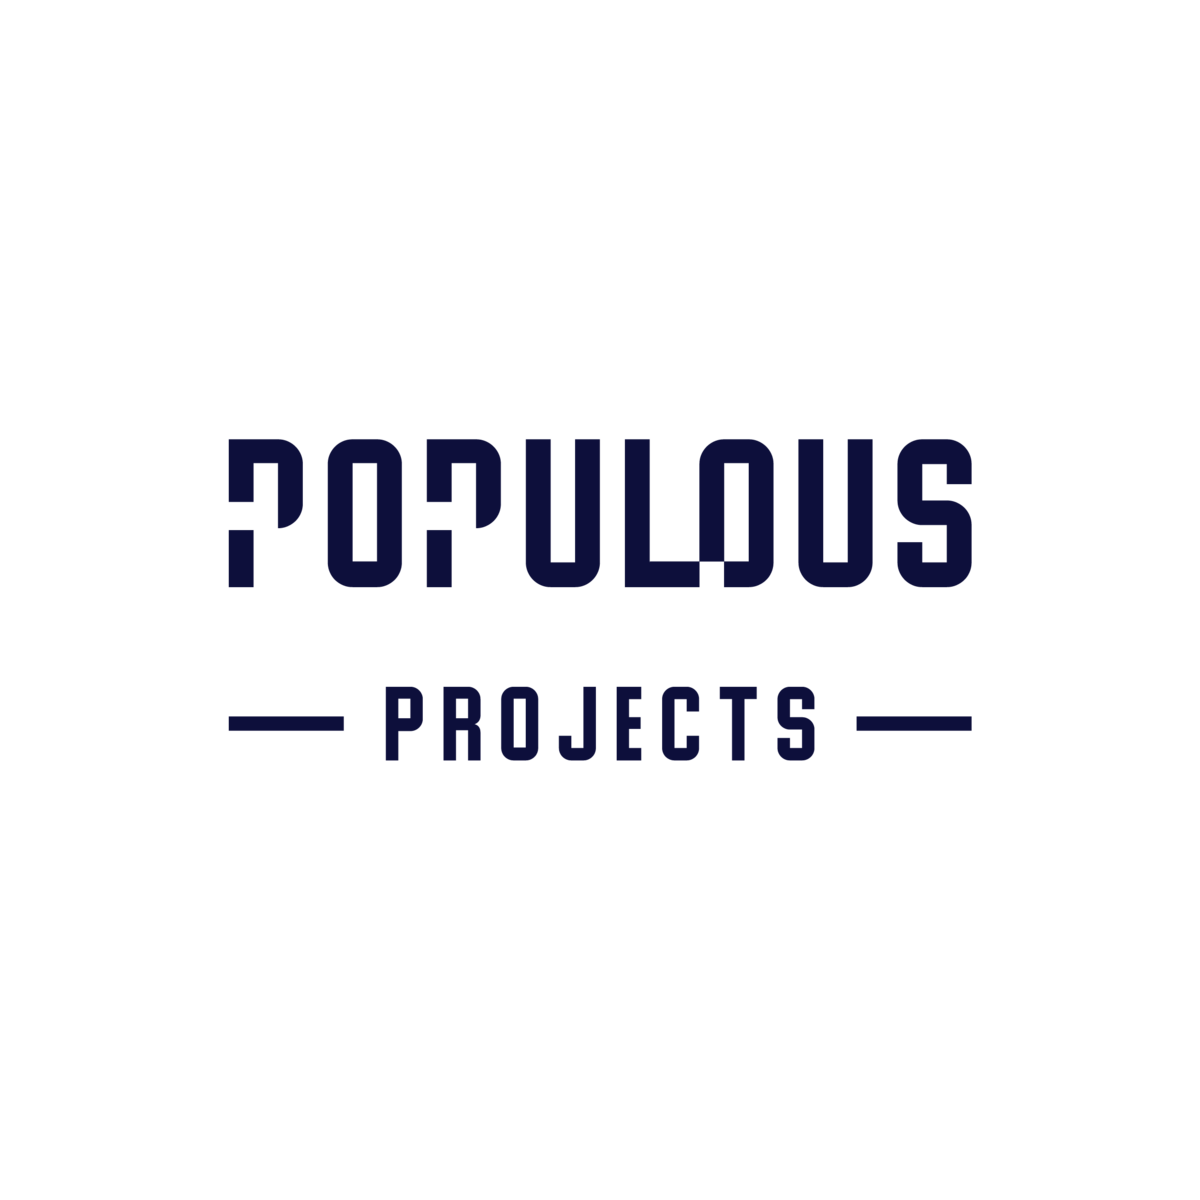 Populous Projects Logo_Portrait1_Colour